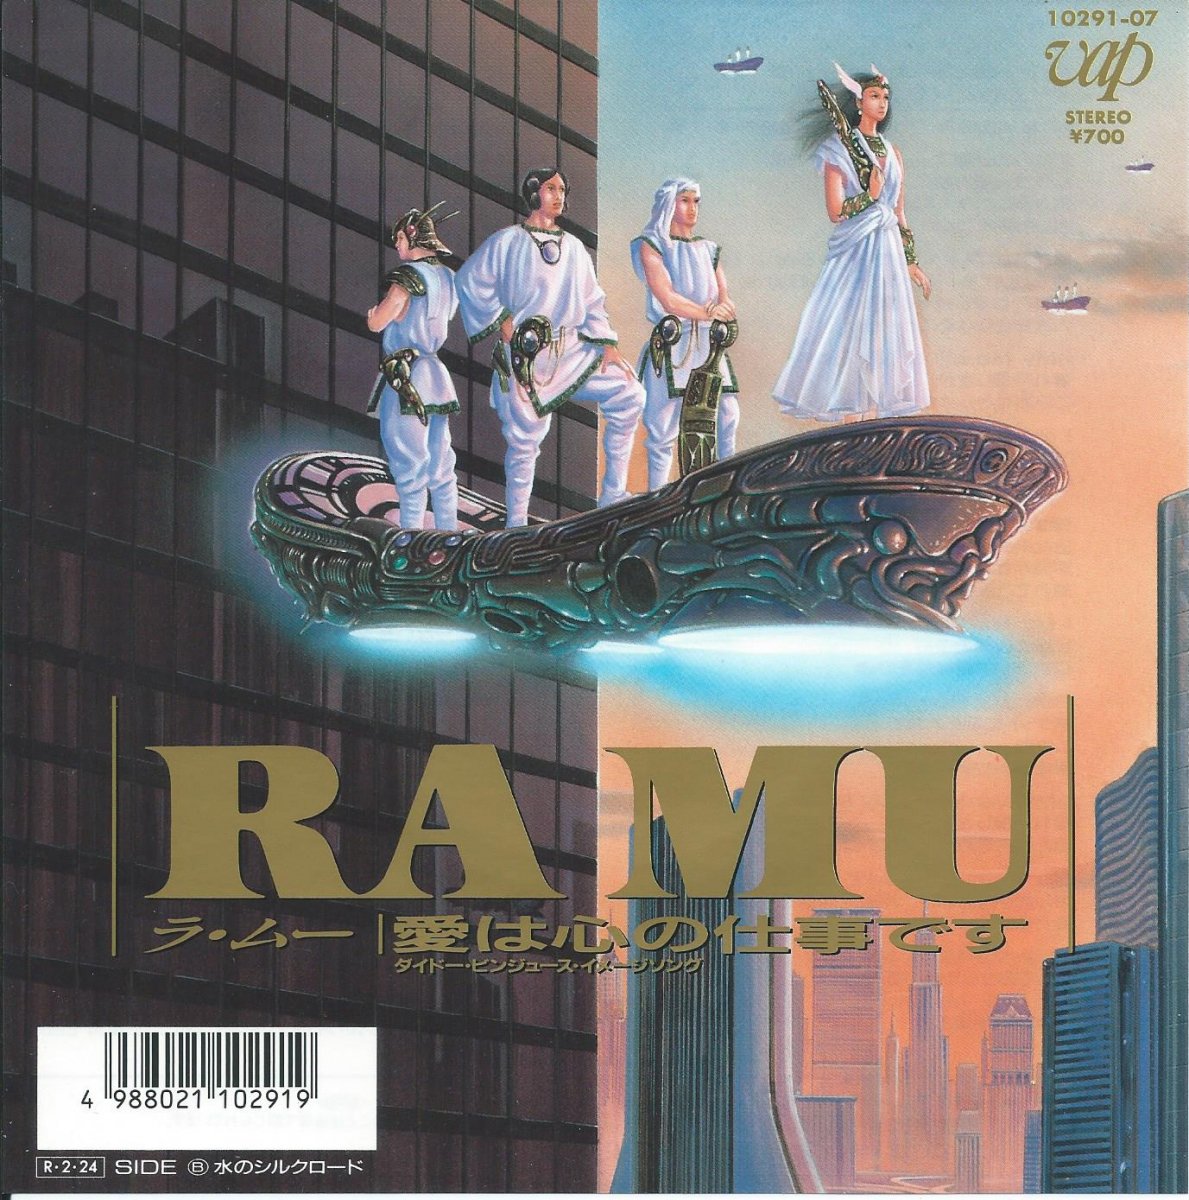 ラ ムー Ramu 愛は心の仕事です 水のシルクロード 7 Hip Tank Records